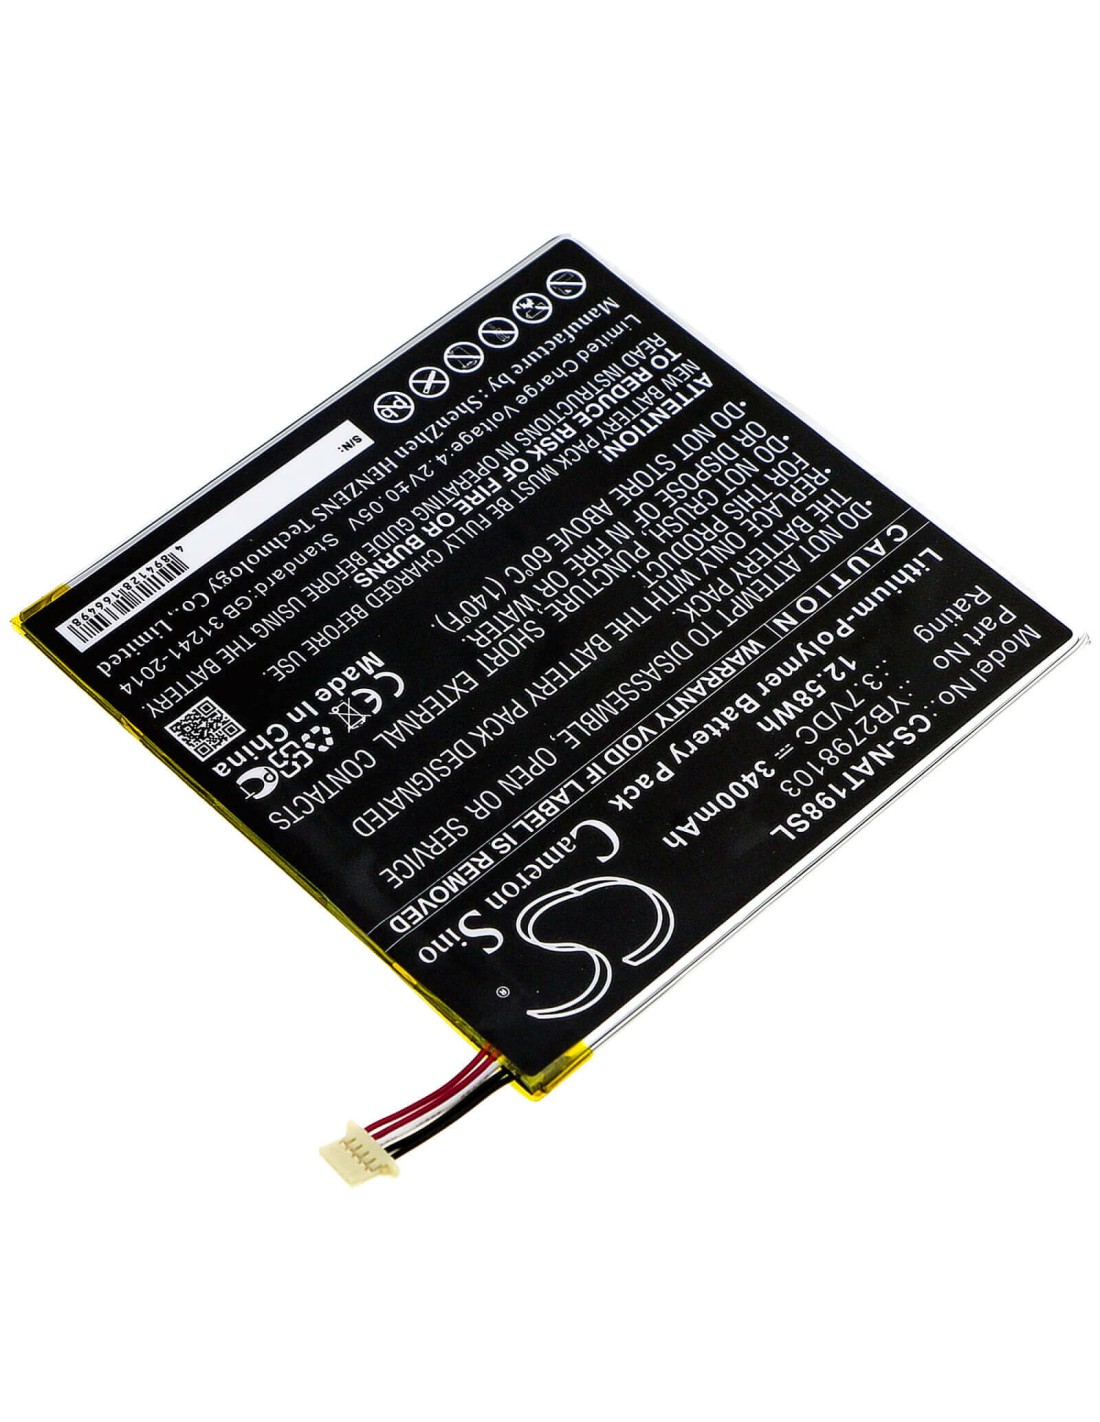 Battery for Onn, Ona19tb002, Tablet 8 3.7V, 3400mAh - 12.58Wh